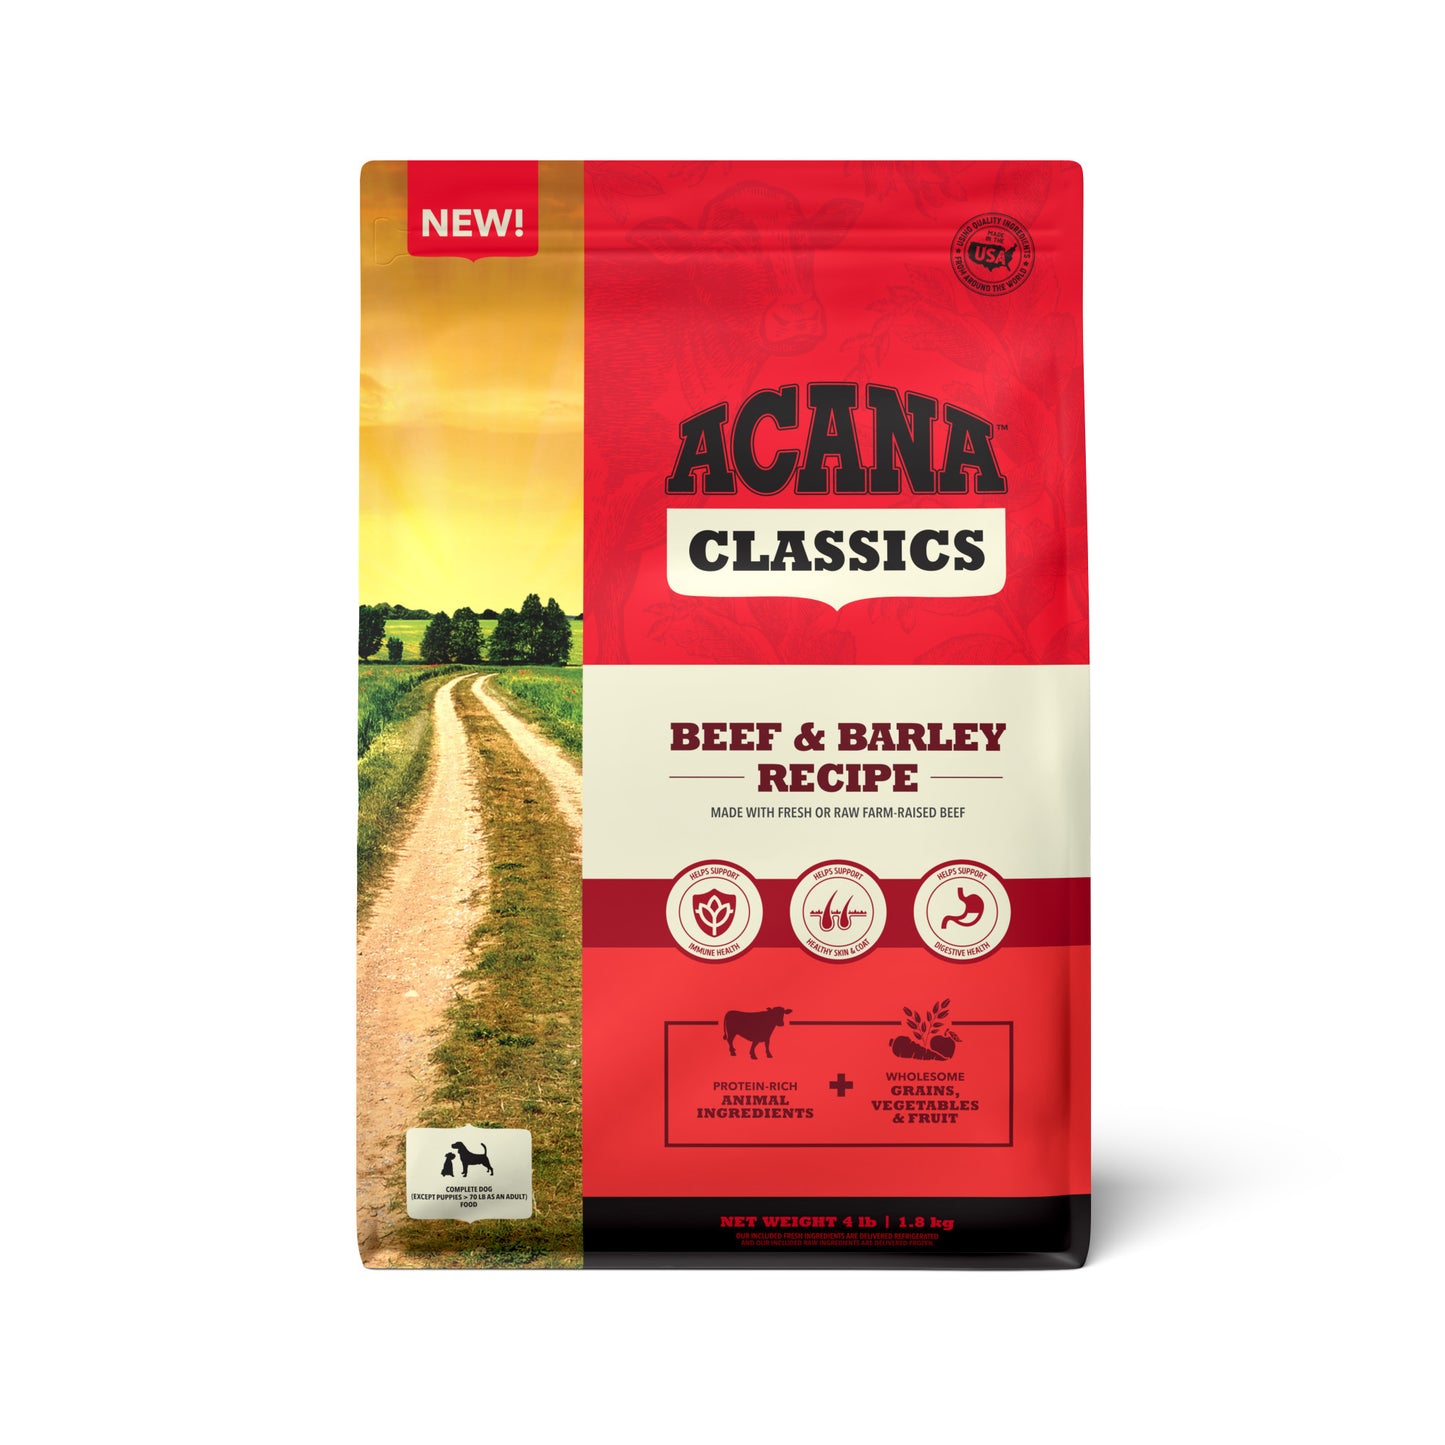 ACANA Classics Beef & Barley Recipe 4lb